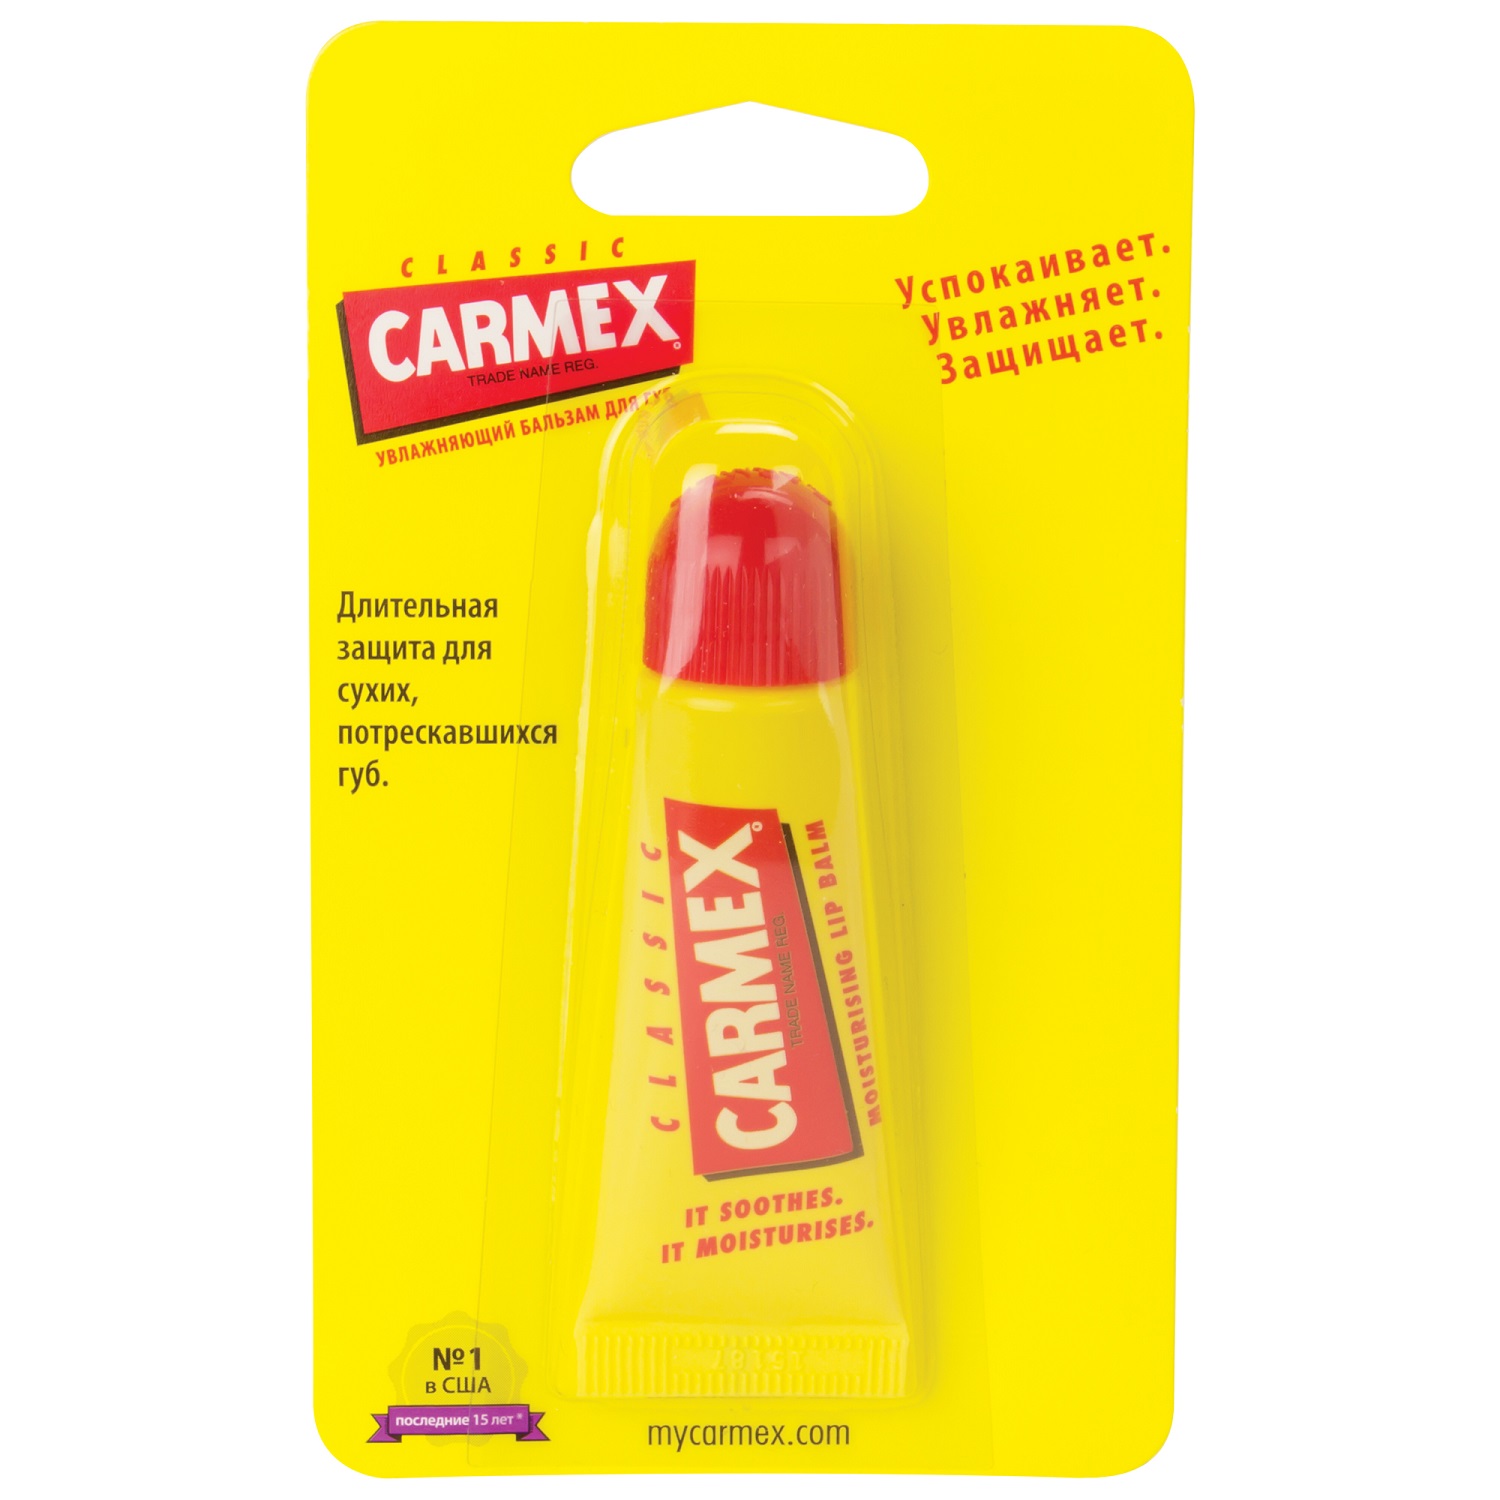 Бальзам для губ CARMEX Классический в тубе - фото 2